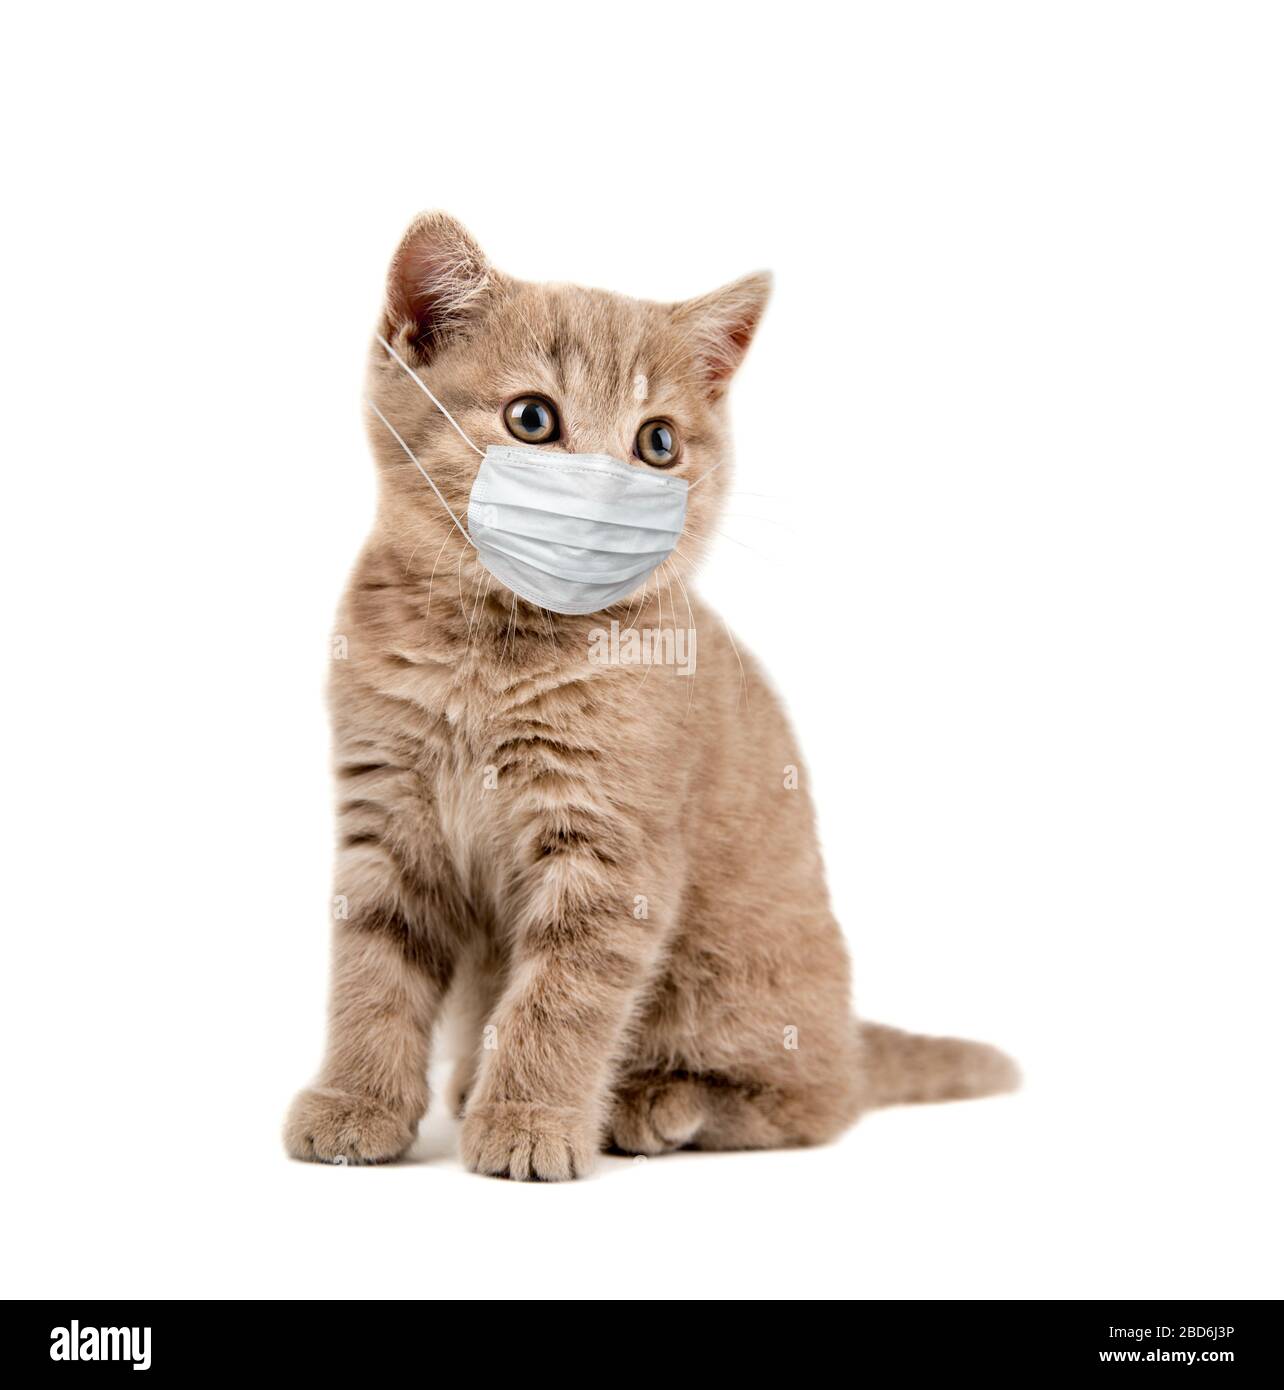 gattino in maschera medica, su sfondo bianco, isolato. Concetto covid-19 coronavirus pandemico Foto Stock